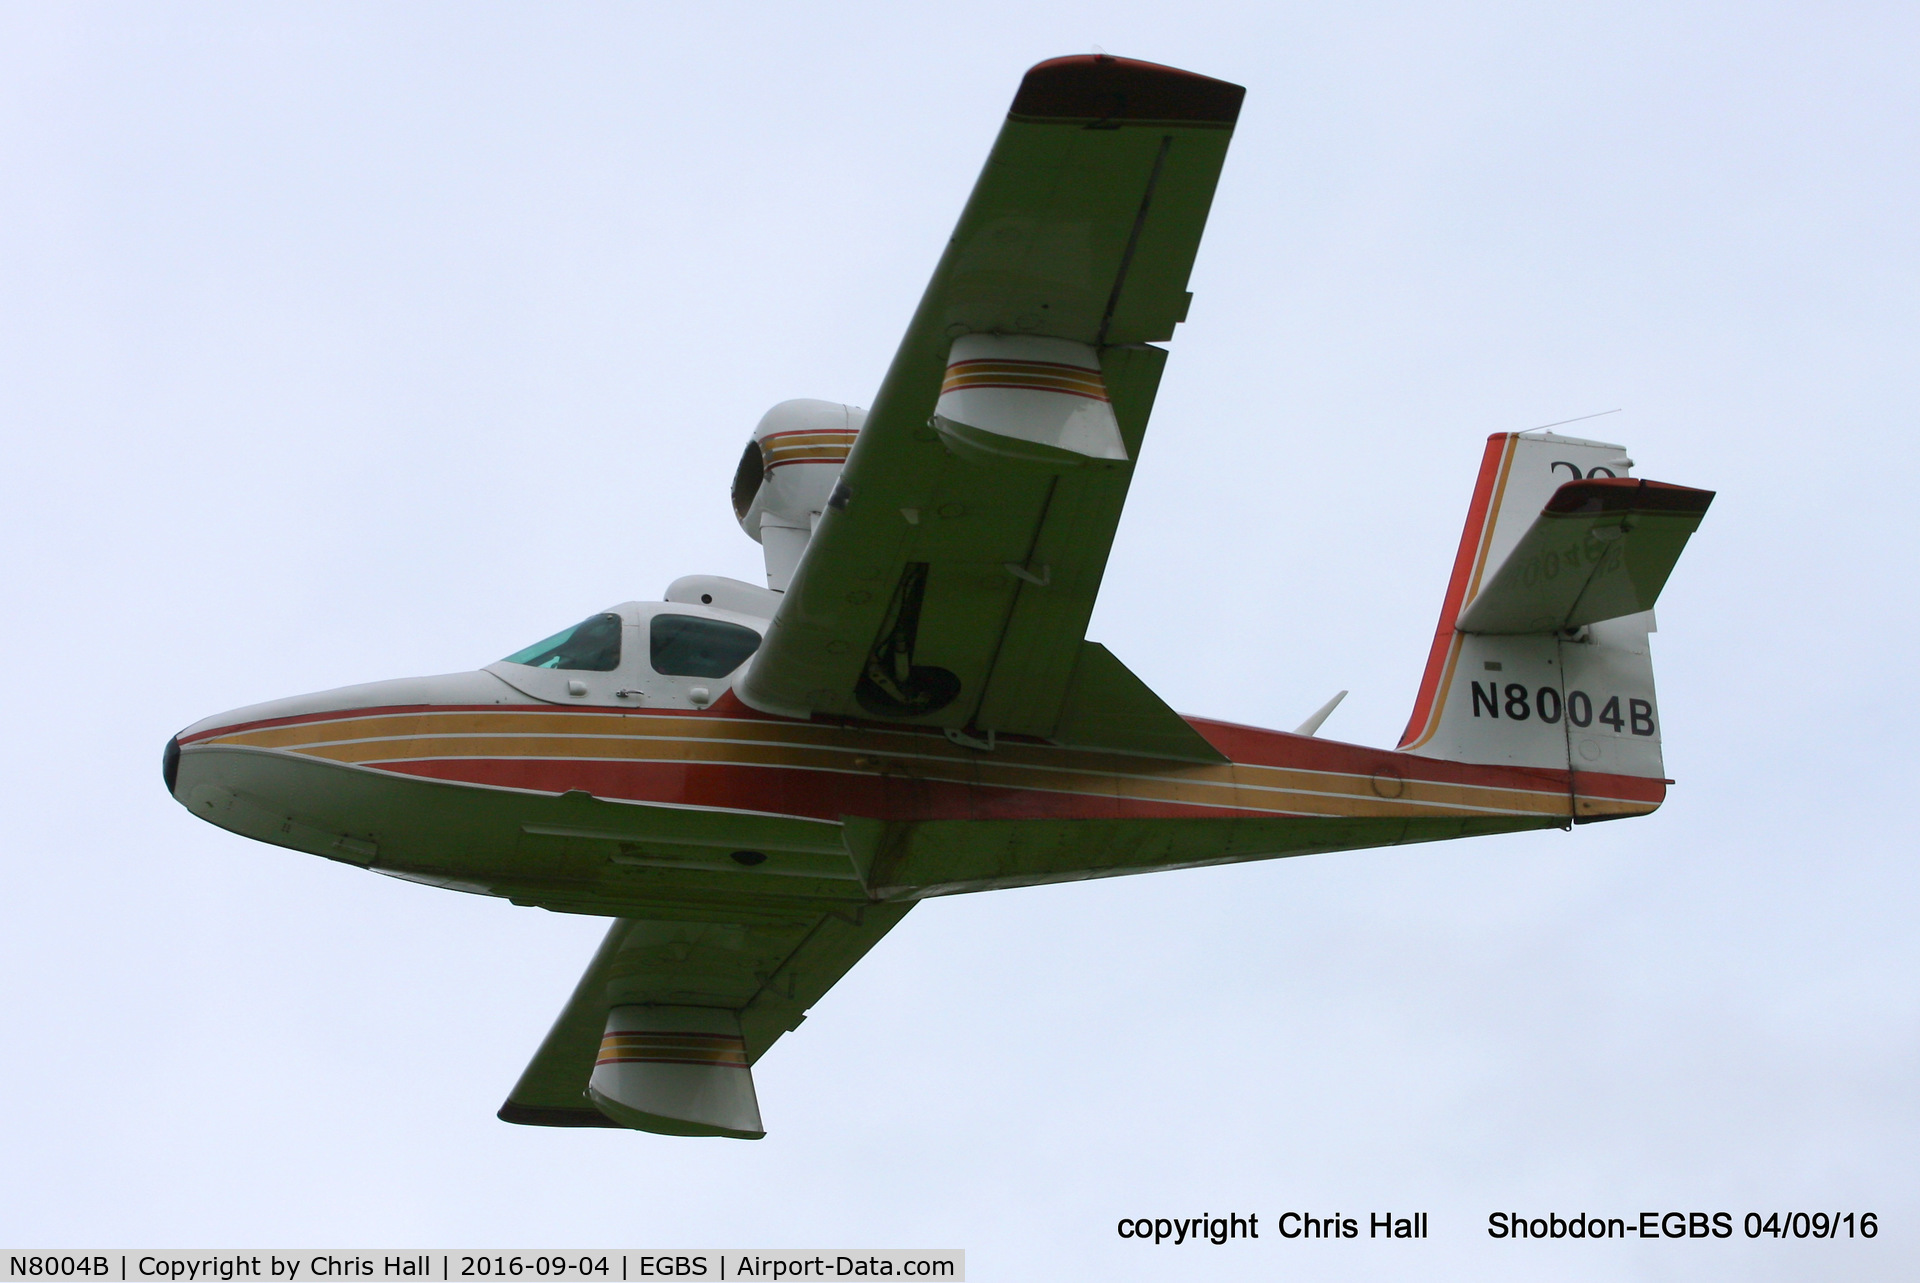 N8004B, 1980 Consolidated Aeronautics Inc. Lake LA-4-200 C/N 1022, Royal Aero Club RRRA air race at Shobdon